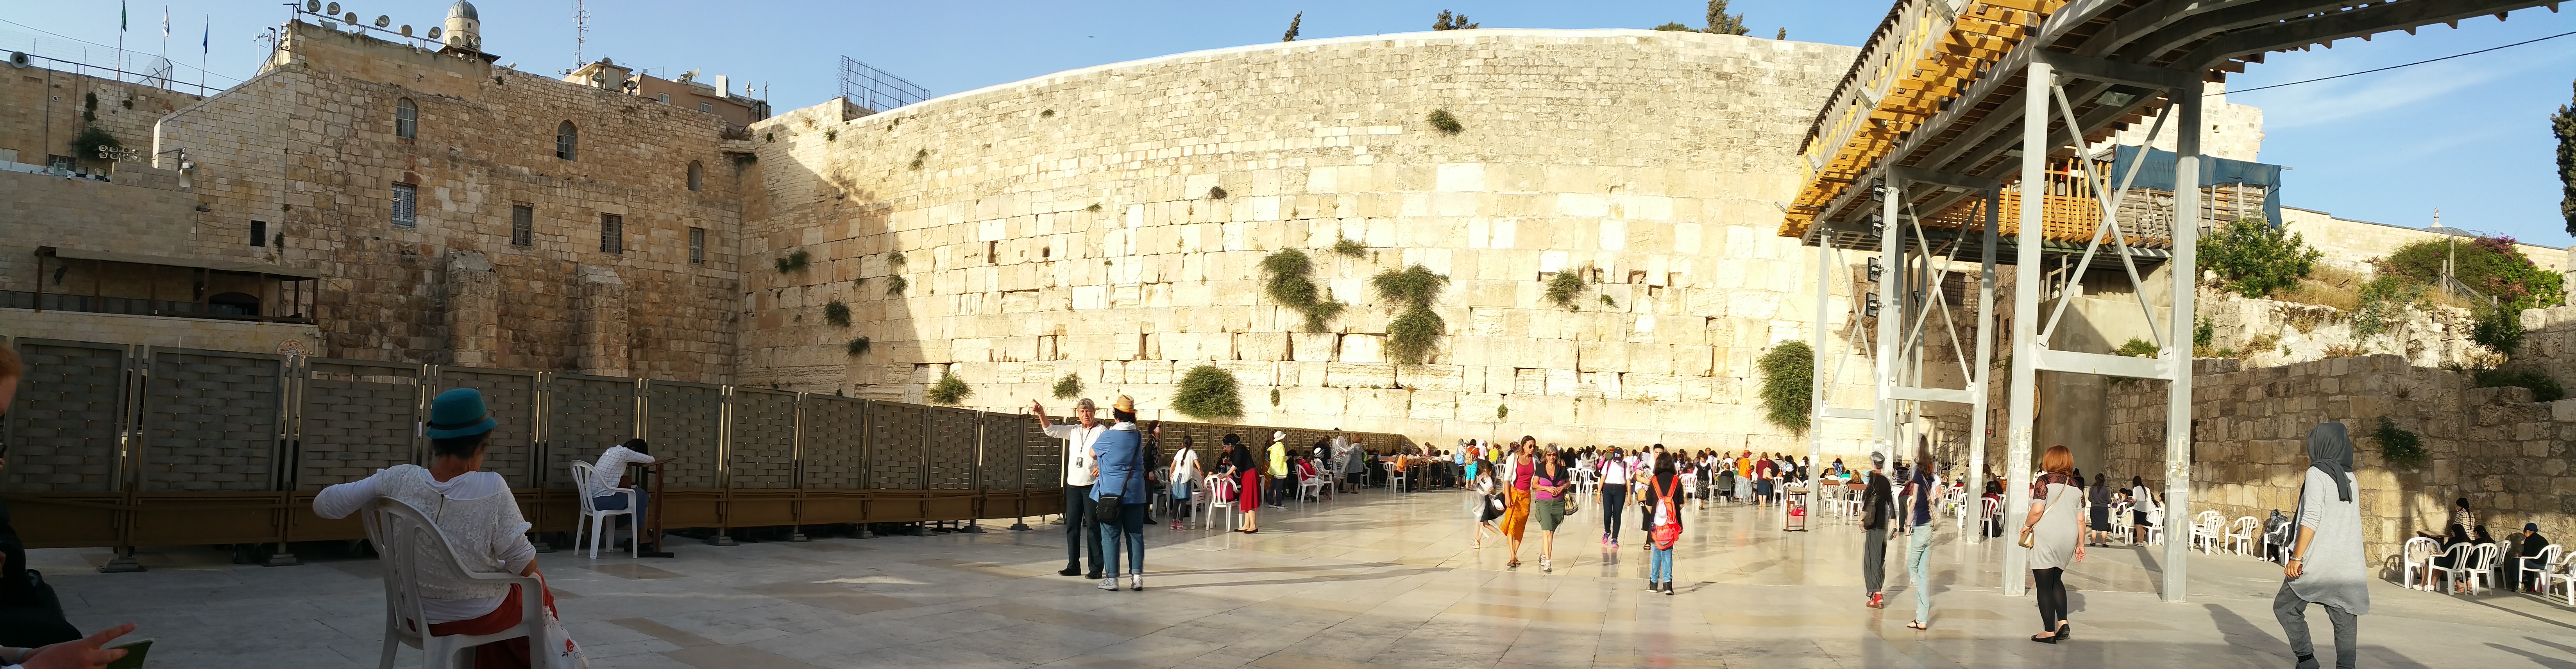 《耶路撒冷三千年》 | 混乱、荒谬，这里是耶路撒冷 - 知乎